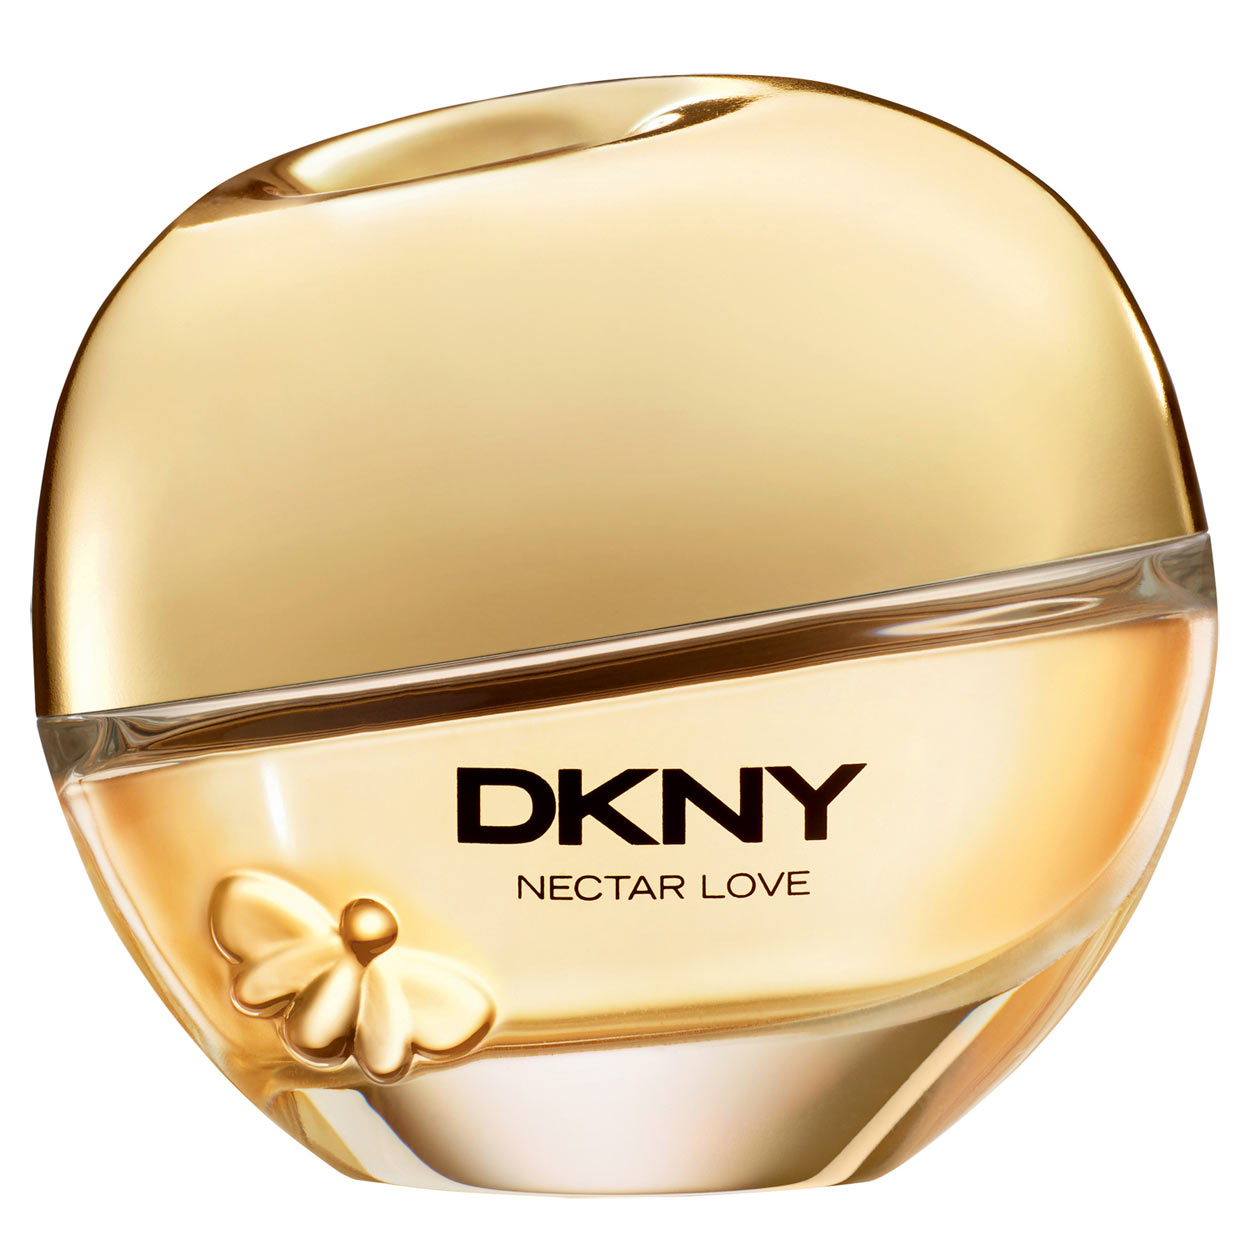 DKNY-Nectar-Love-Donna-Karan